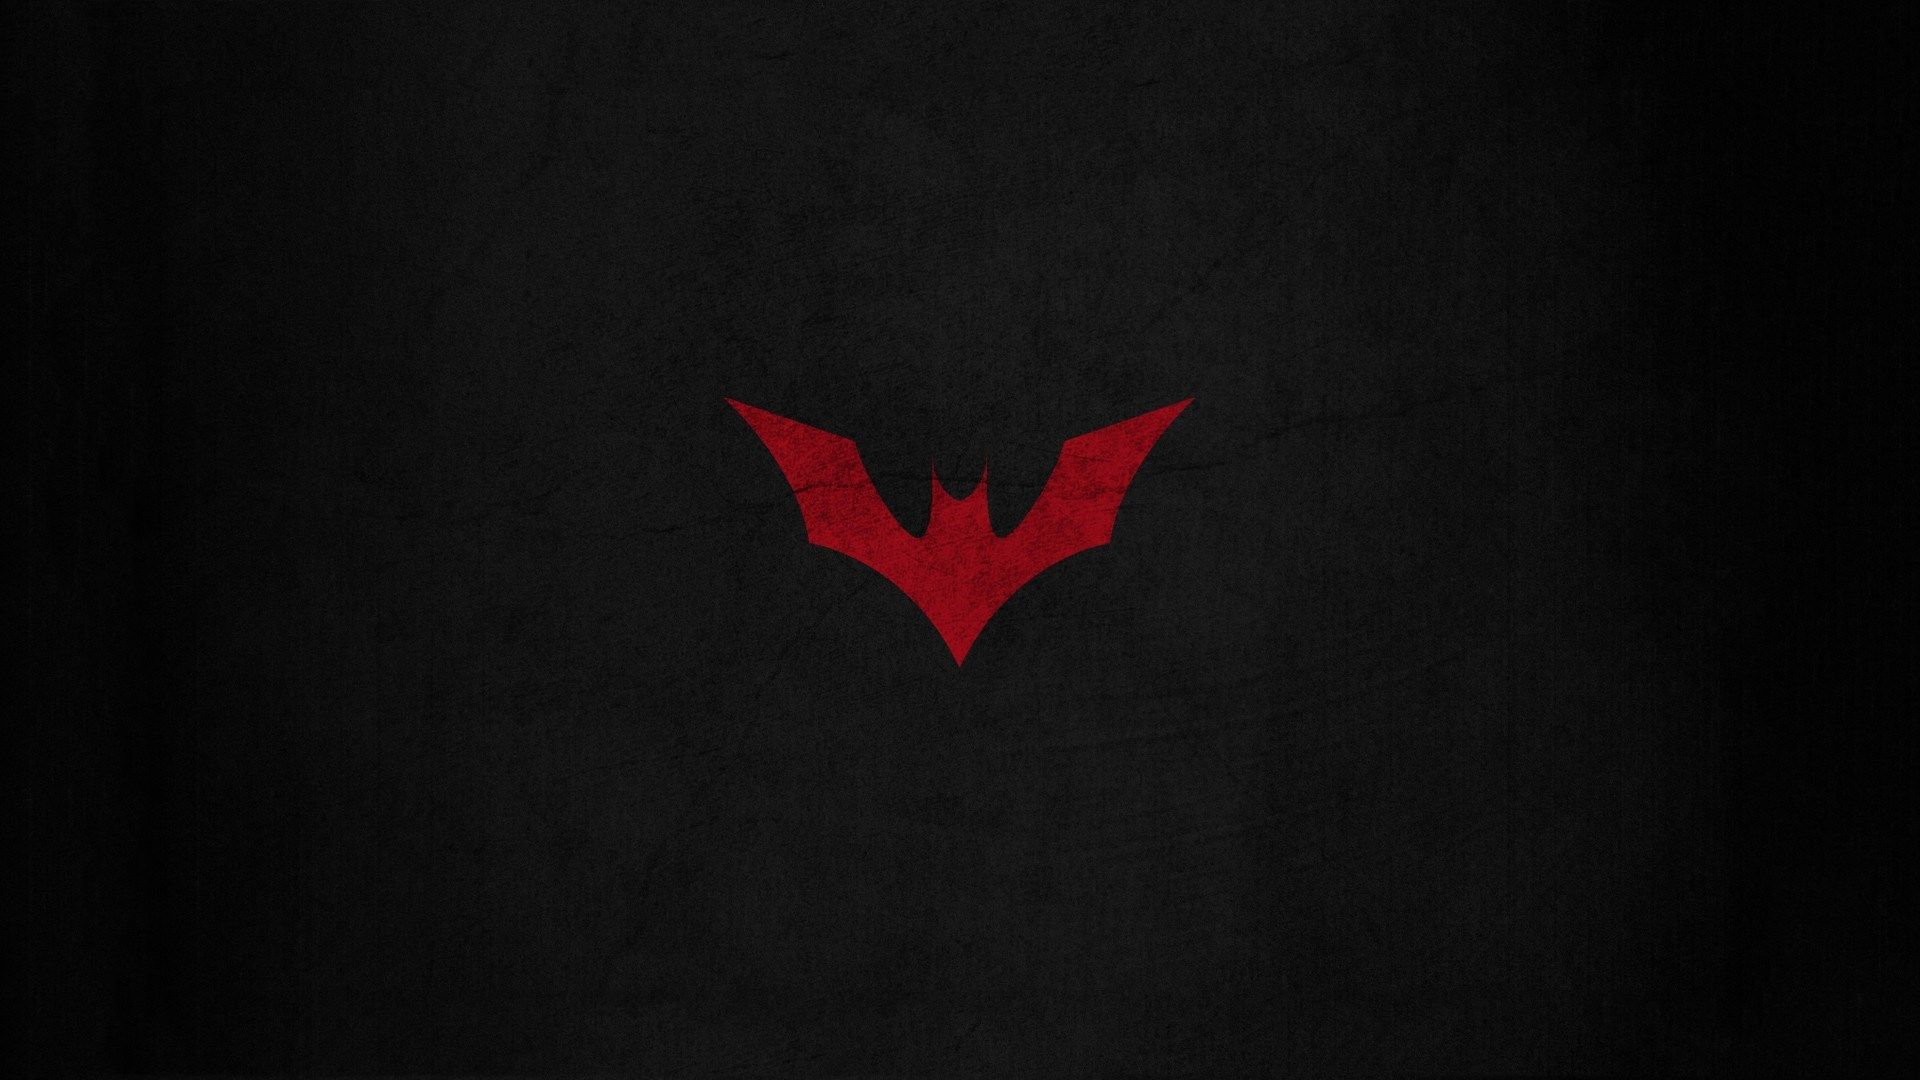 free desktop batman logo wallpaper download. Batman wallpaper, Batman background, Batman beyond